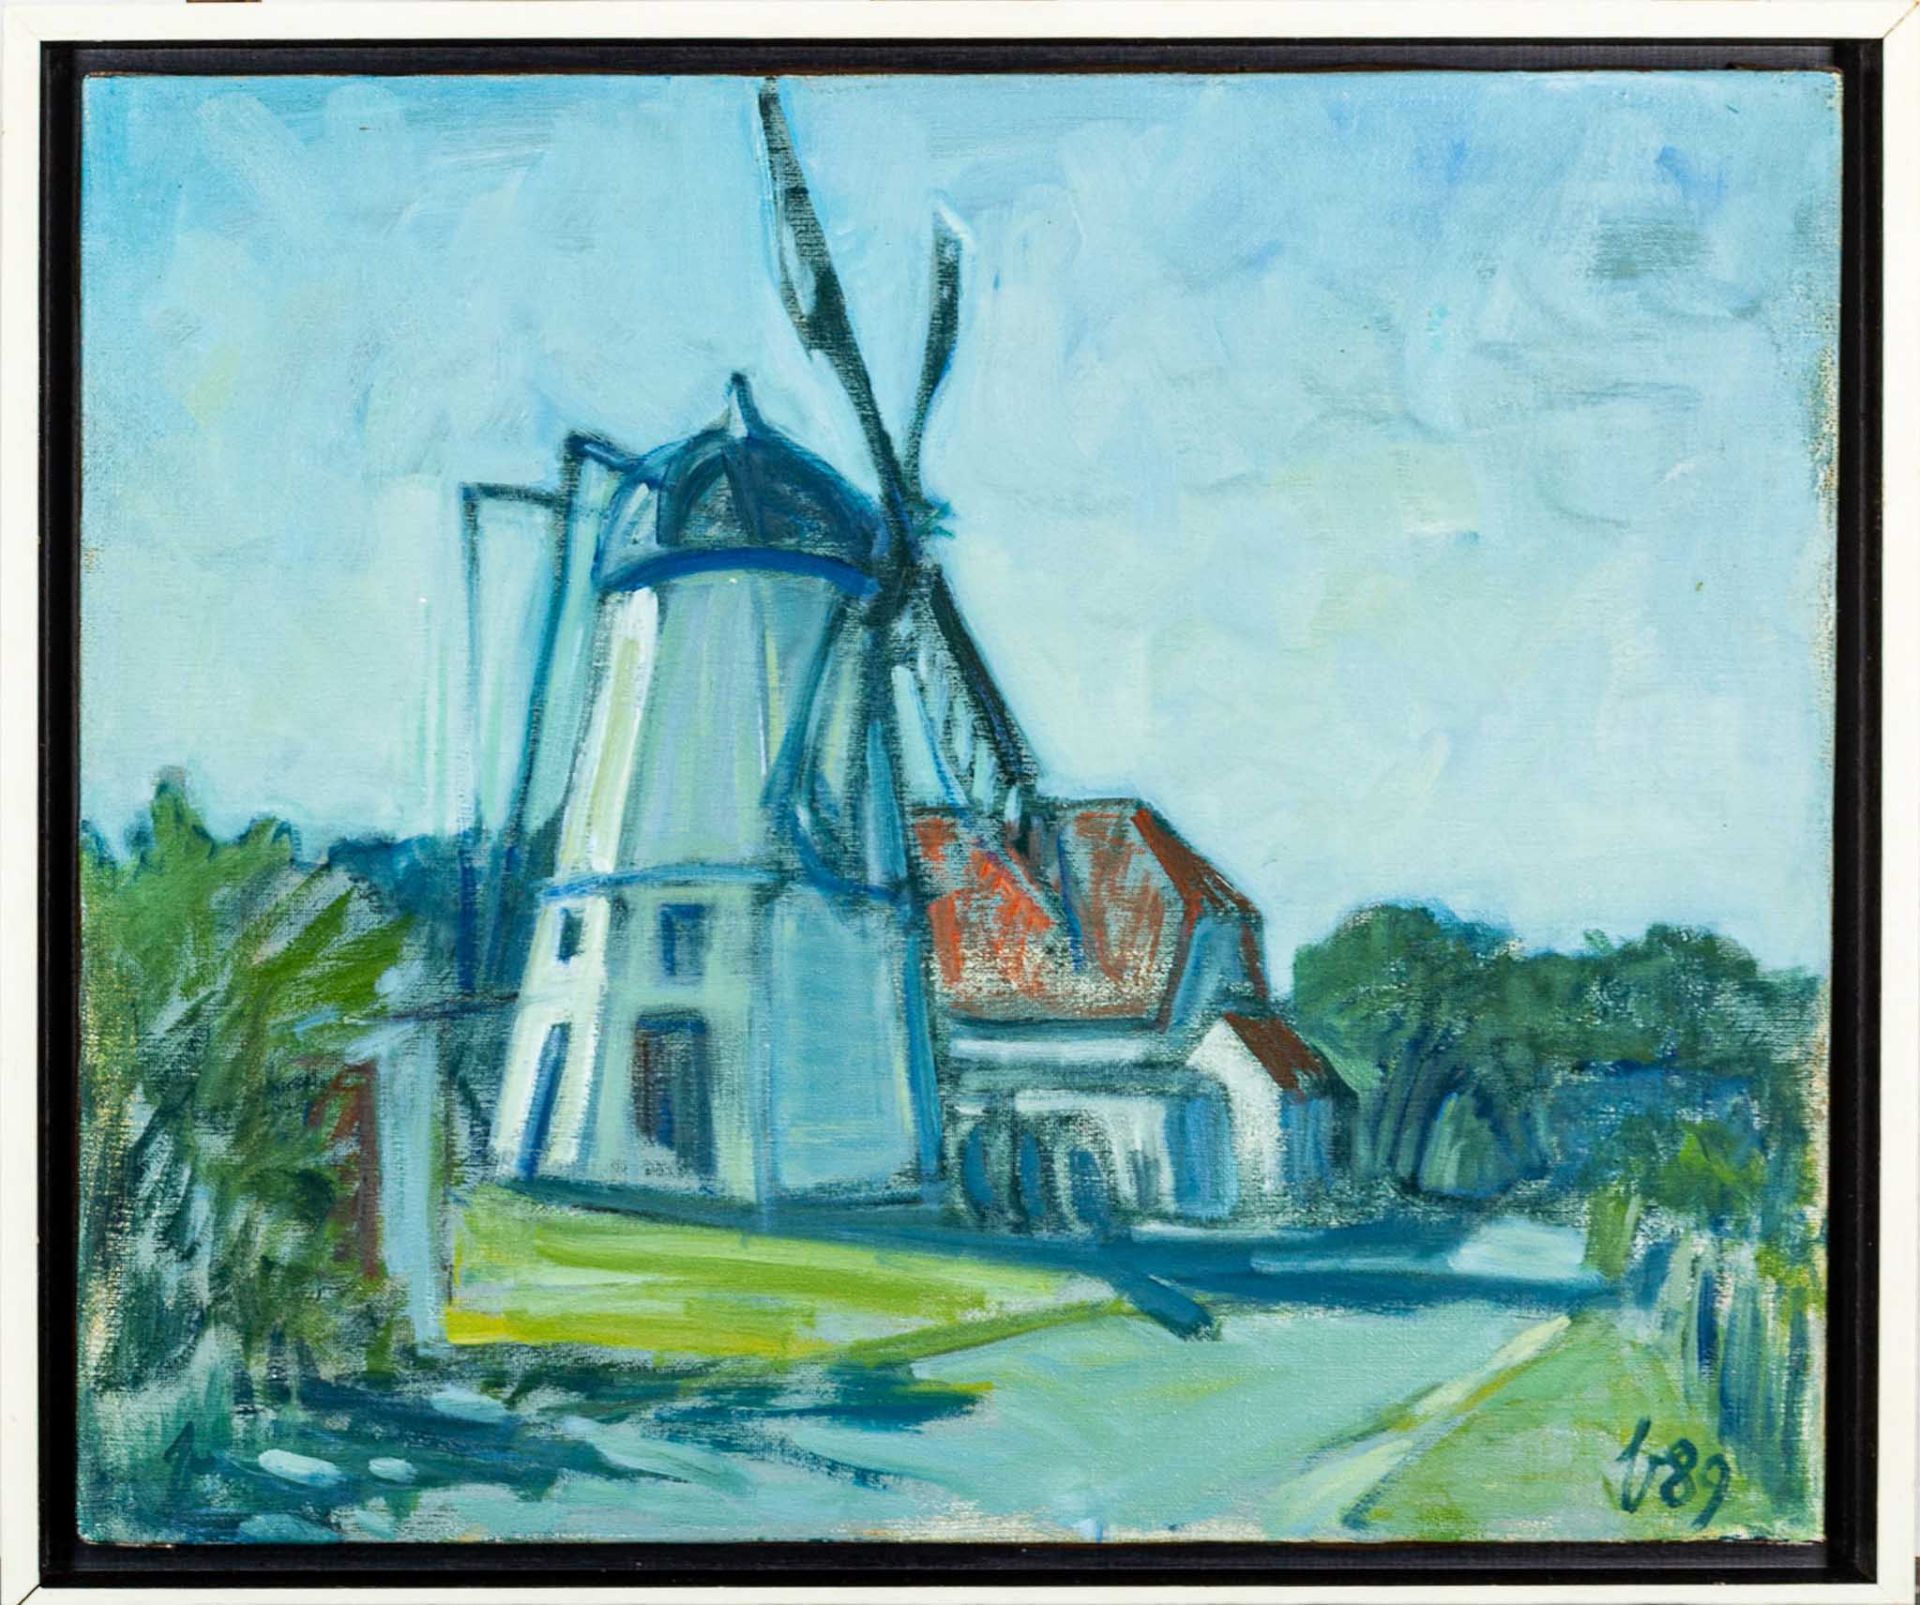 "Windmühle", Gemälde des Paul Baak (1912 - 1994) von 1989, ca. 50 x 60 cm, Scha